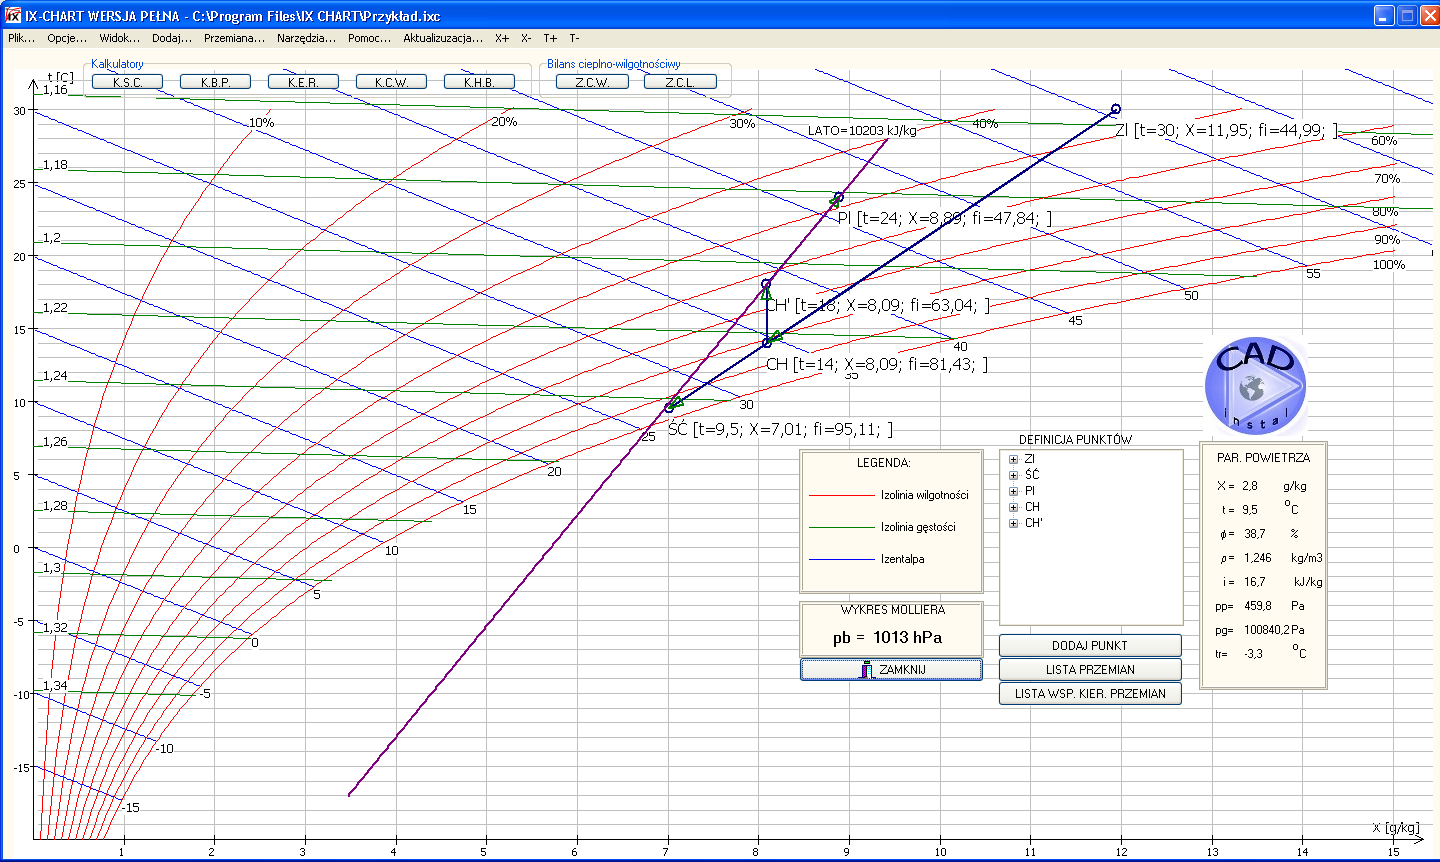 1. OPIS PROGRAMU IX CHART (WYKRES IX, WYKRES MOLLIERA) WWW.WYKRES-IX.PL Program IX CHART jest aplikacją wspomagającą projektowanie procesów przemian powietrza wilgotnego.